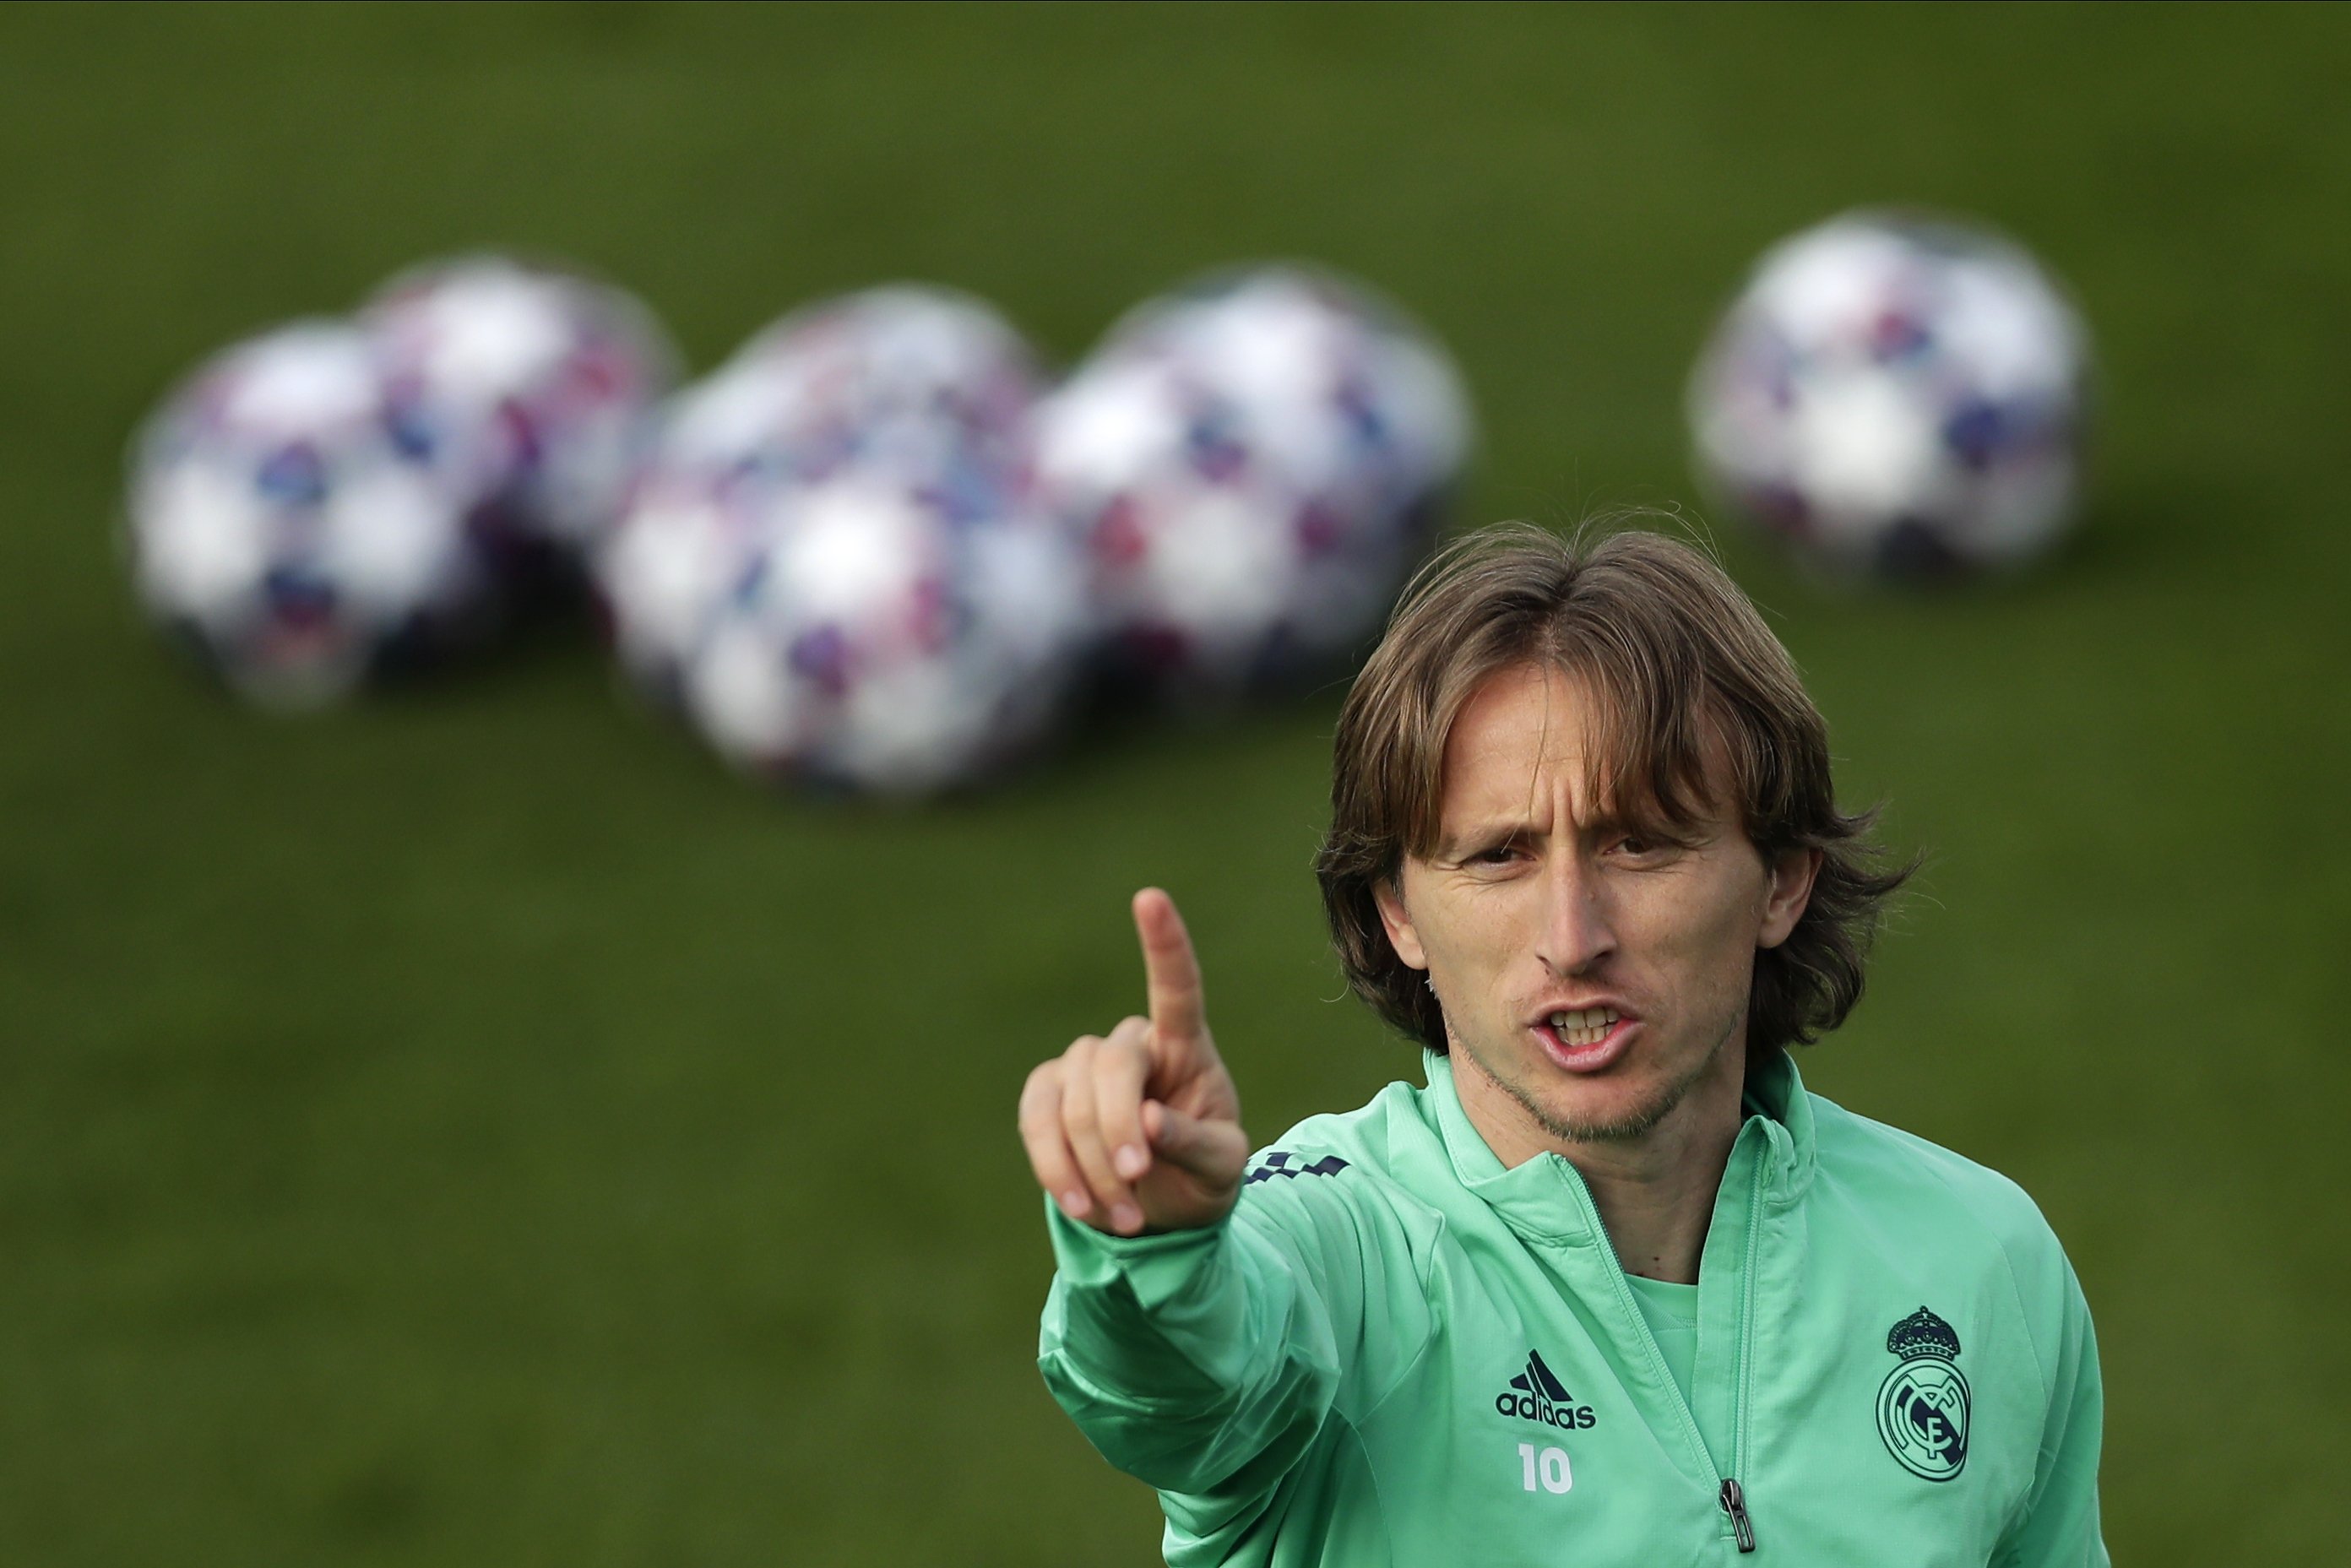 Modric ha estat negociant la seva sortida del Reial Madrid fins fa menys d'1 mes